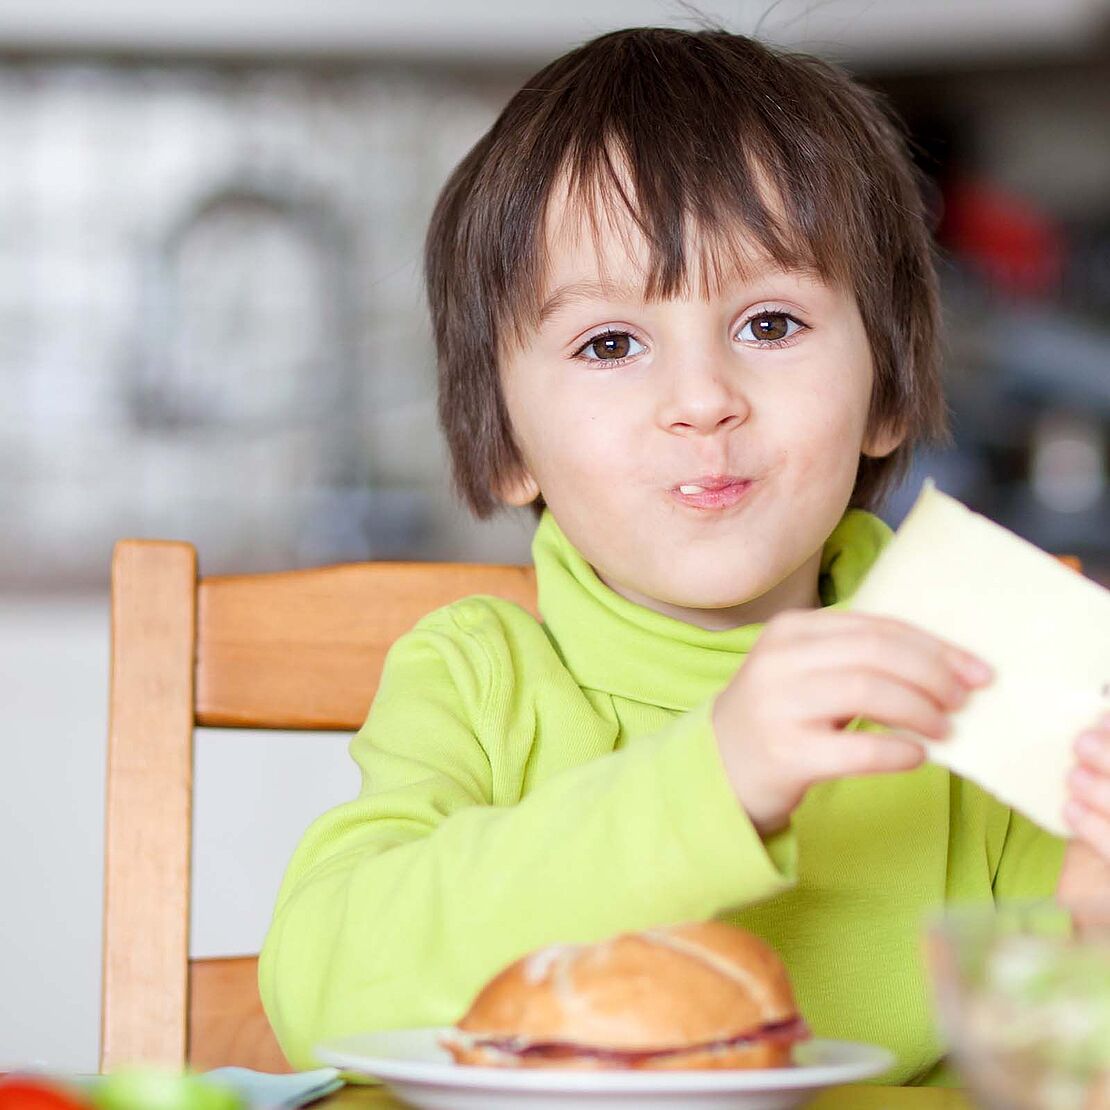 Kinderernährung – Ein Käsebrot schmeckt nicht nur lecker, sondern hilft bei der Entwicklung des Körperbaus. 